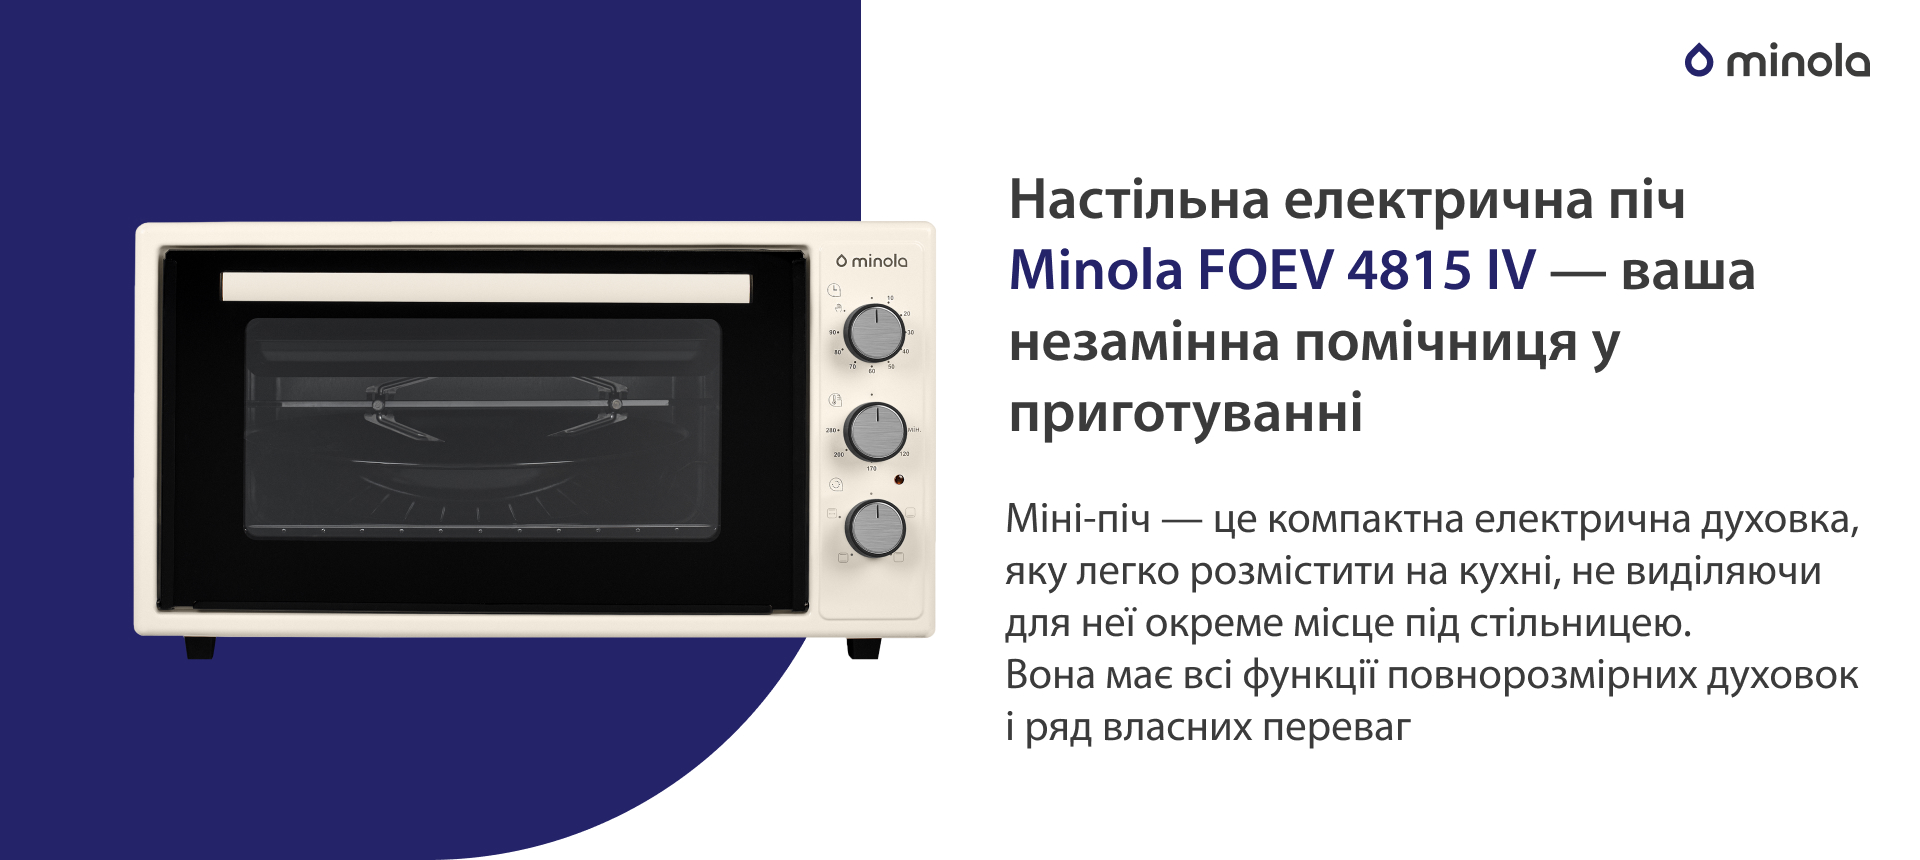 Міні-піч — це компактна електрична духовка, яку легко розмістити на кухні, не виділяючи для неї окреме місце під стільницею. Вона має всі функції повнорозмірних духовок і ряд власних переваг